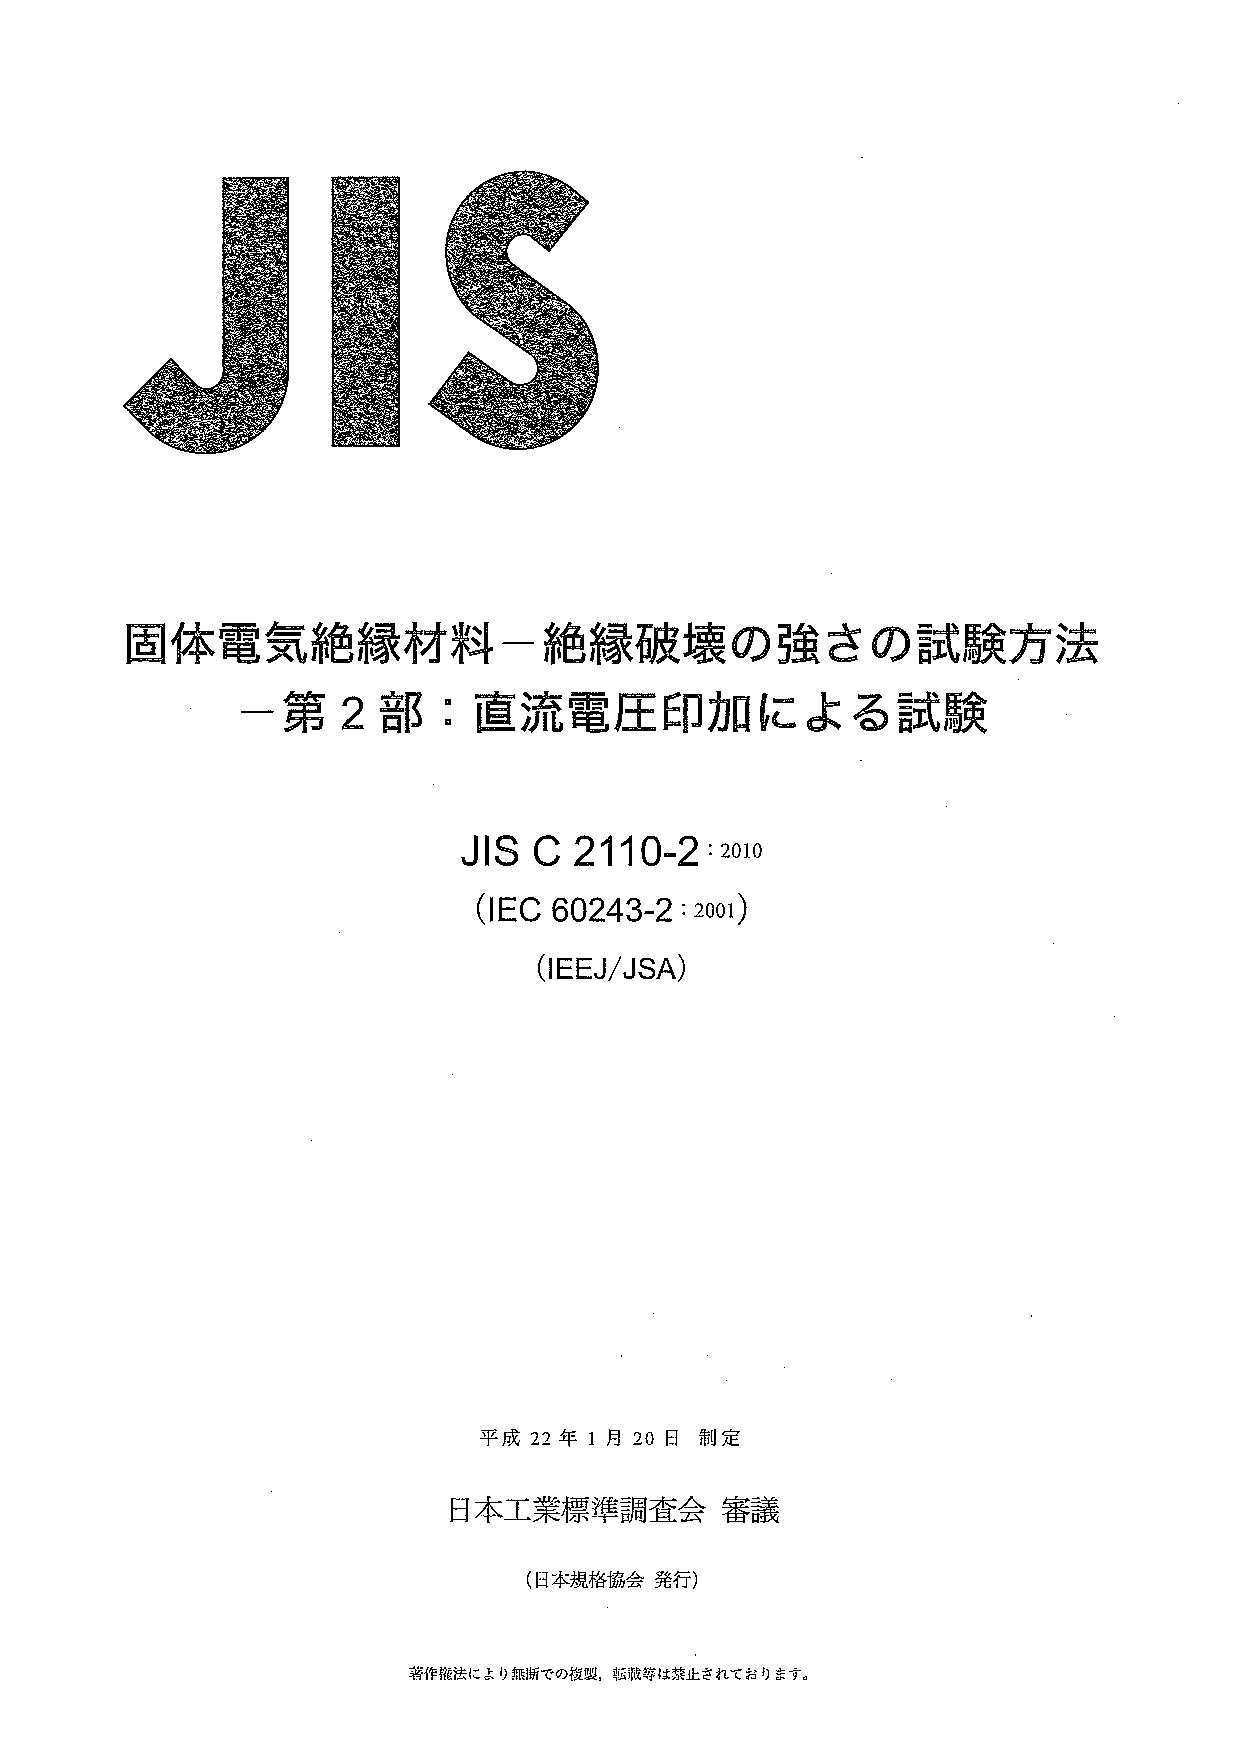 JIS C2110-2-2010